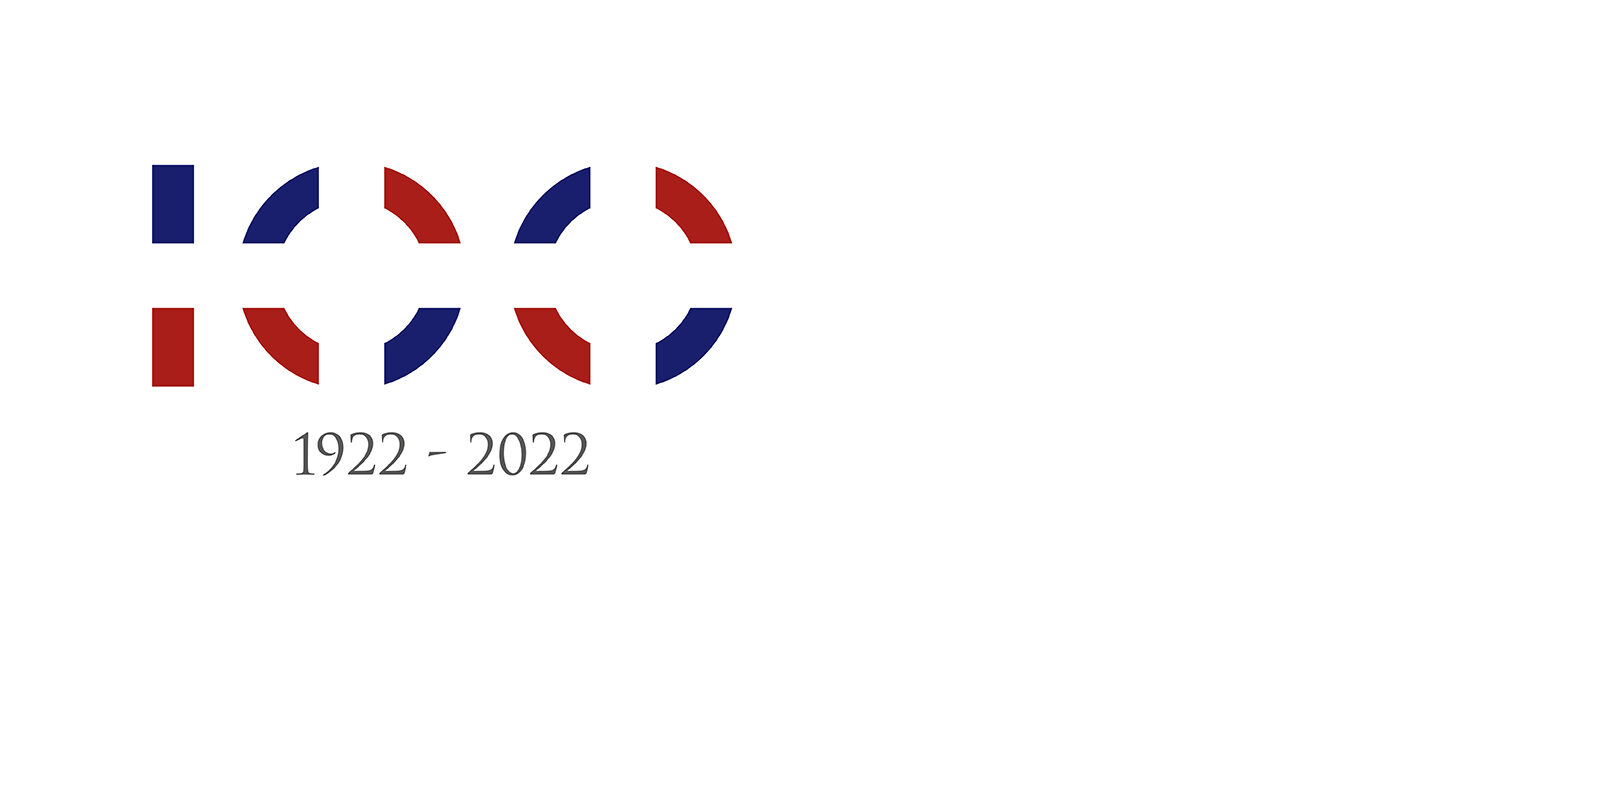 Nuestro centenario: 1922 – 2022